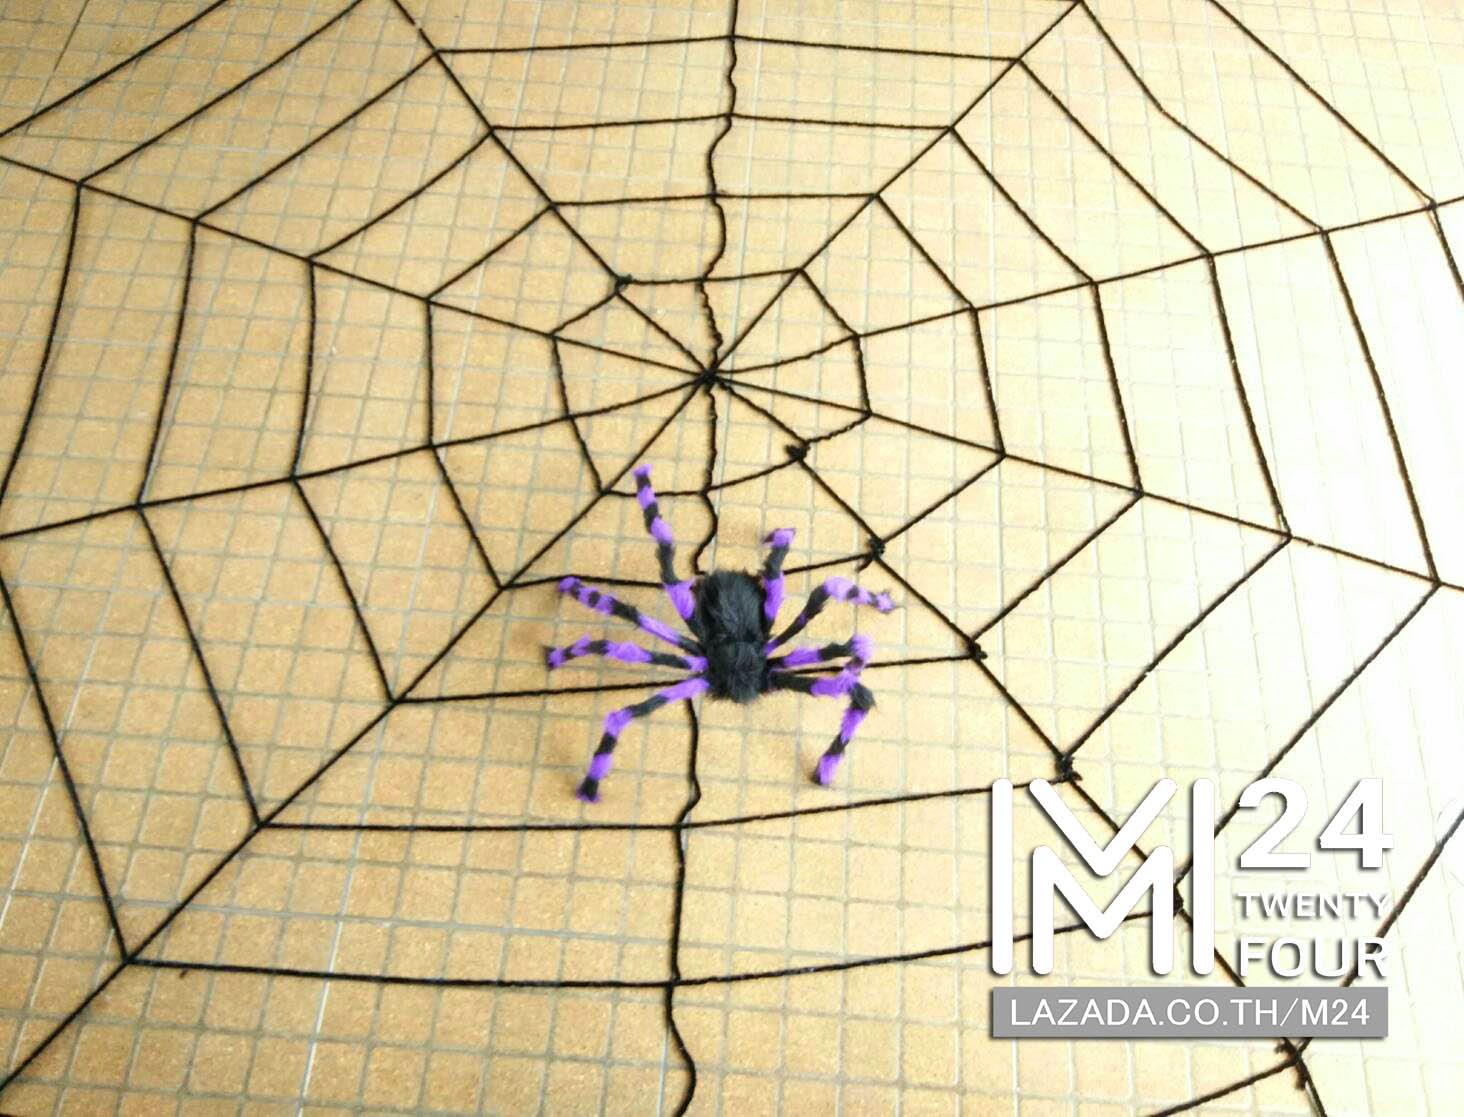 1 เซ็ต 2 ชิ้น ใยแมงมุมยักษ์ สีดำ ขนาด 3x3 เมตร 1 ชิ้น + แมงมุมยักษ์ สีม่วงดำ 1 ตัว แมงมุมปลอม แมงมุม ยักษ์ ตัวใหญ่ ของปลอม ของเล่น ตัวตลก ของเล่นแกล้งคน อุปกรณ์ตกแต่ง ฮาโลวีน black widow giant spider web party happy halloween